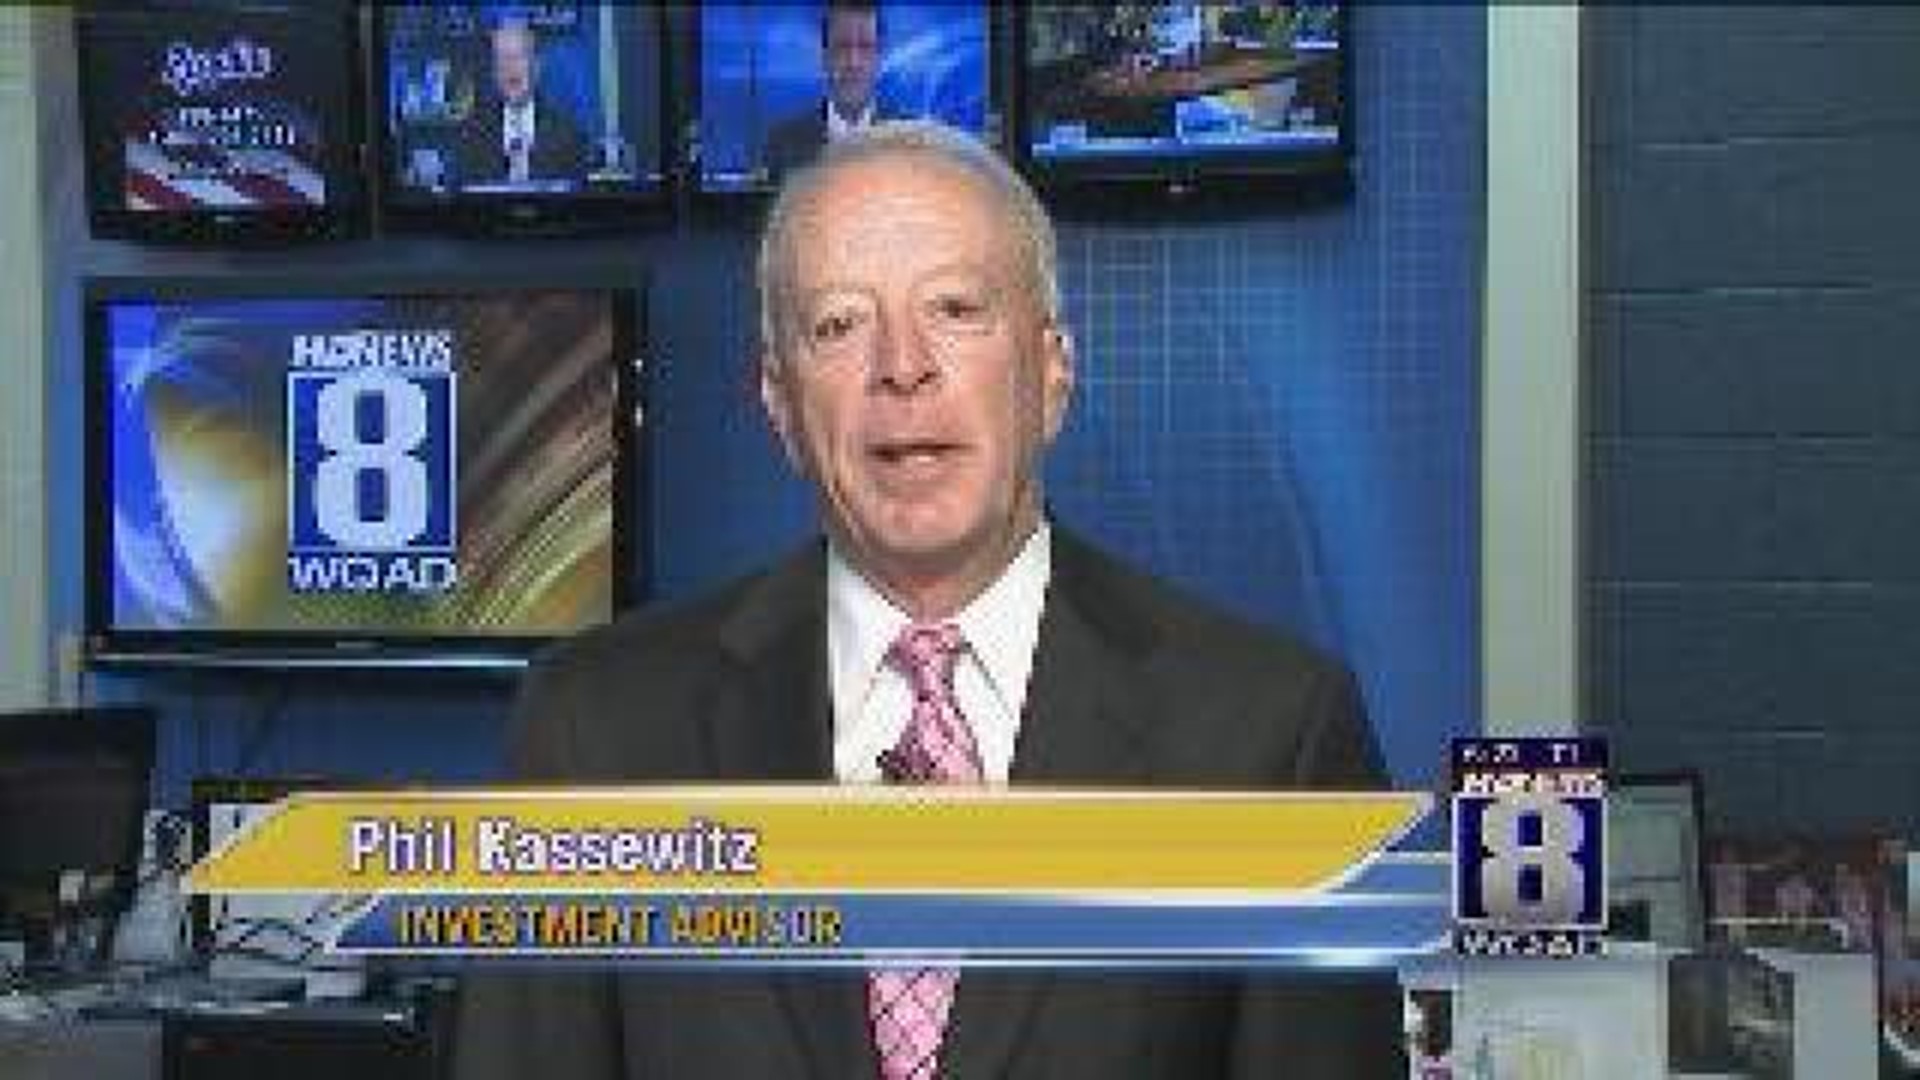 Phil Kassewitz talks about volatile market